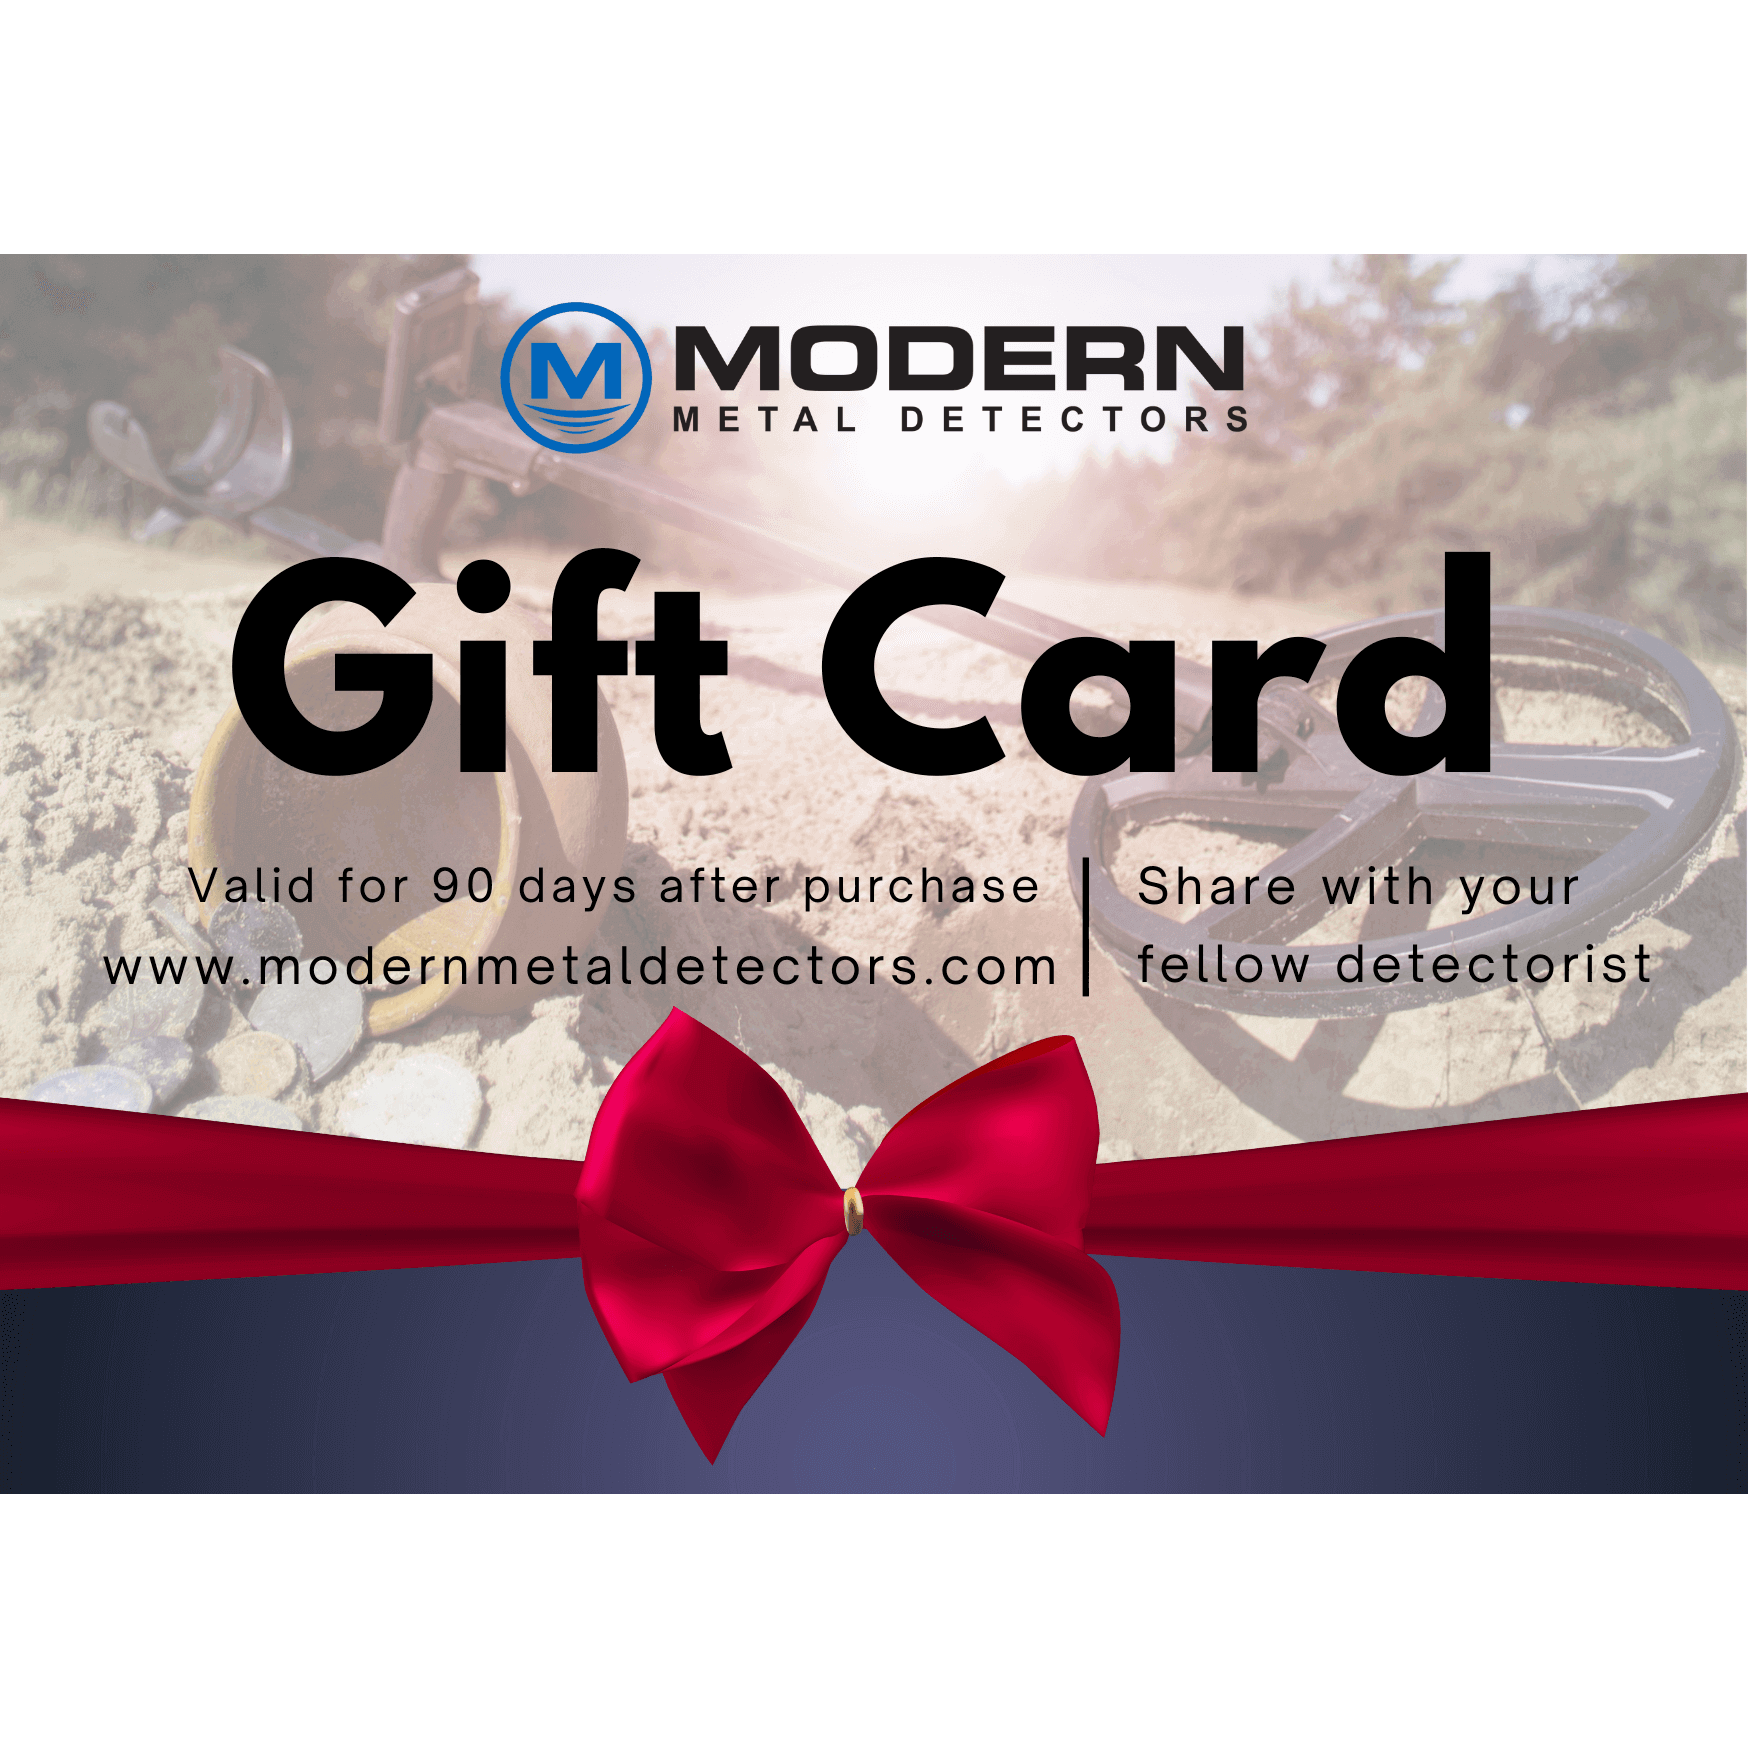 Modern Metal Detectors Gift Card Modern Metal Detectors Gift Card